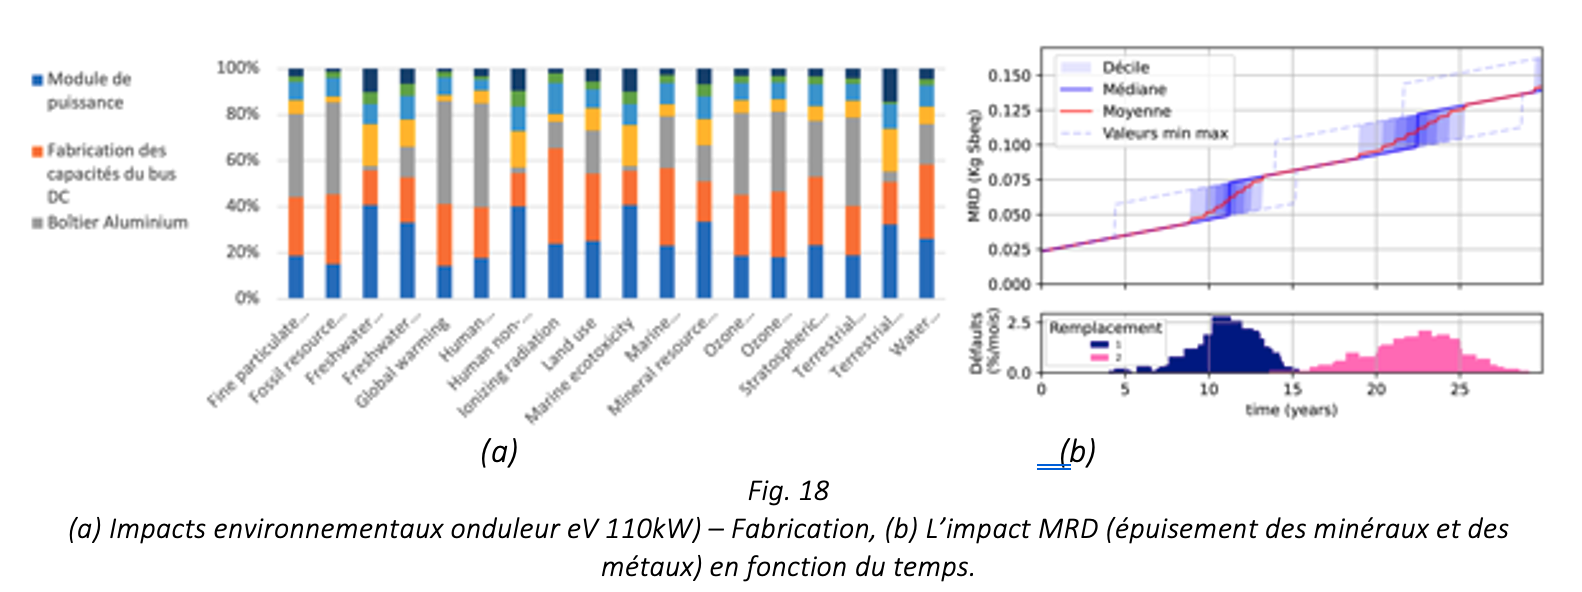 (a) Impacts environnementaux onduleur eV 110kW) – Fabrication, (b) L’impact MRD (épuisement des minéraux et des métaux) en fonction du temps.